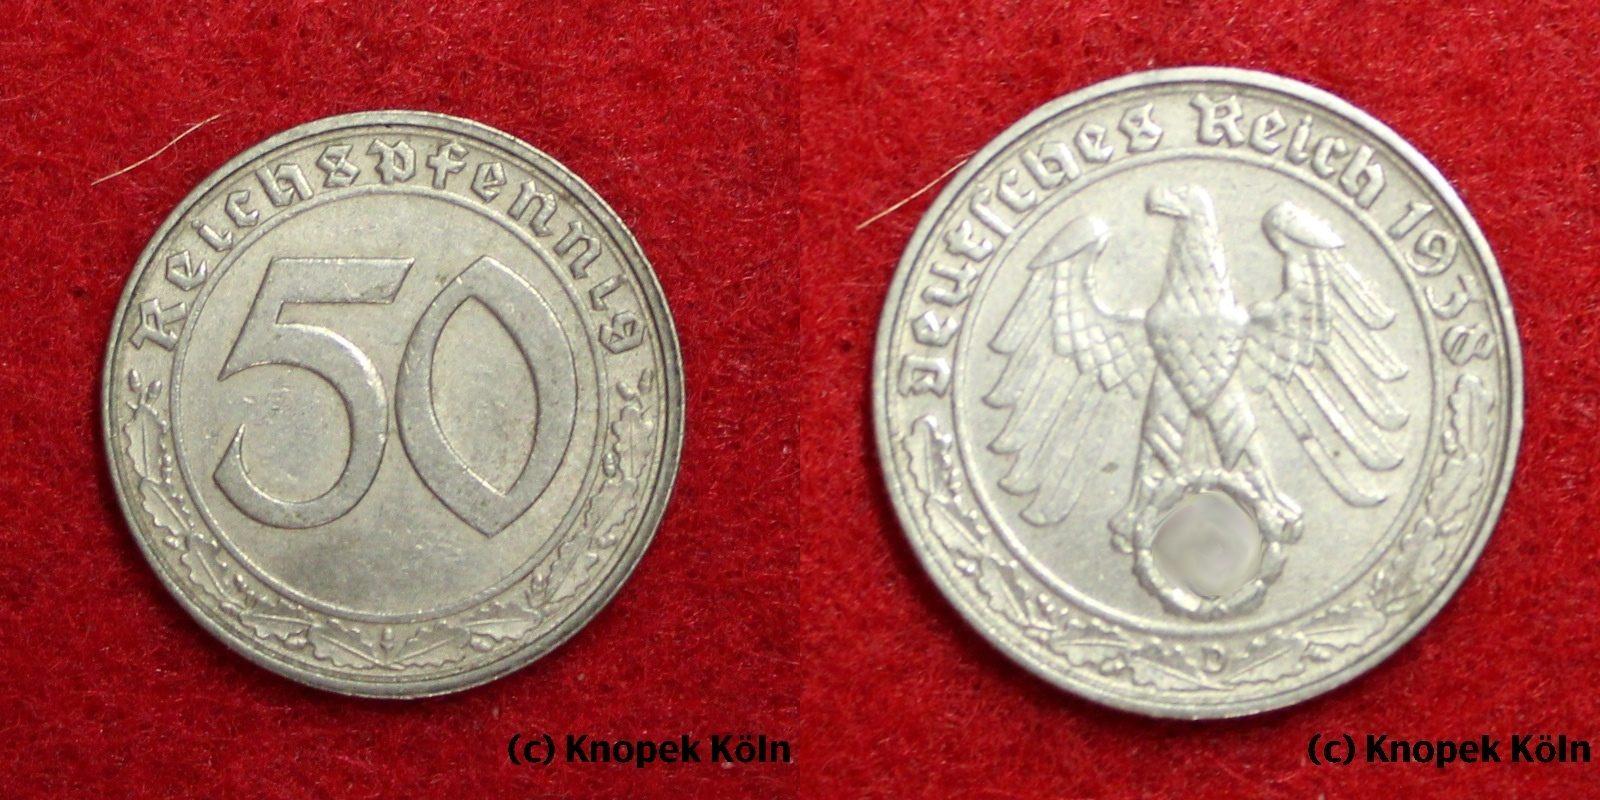 Foto Drittes Reich 50 Reichspfennig 1938 D